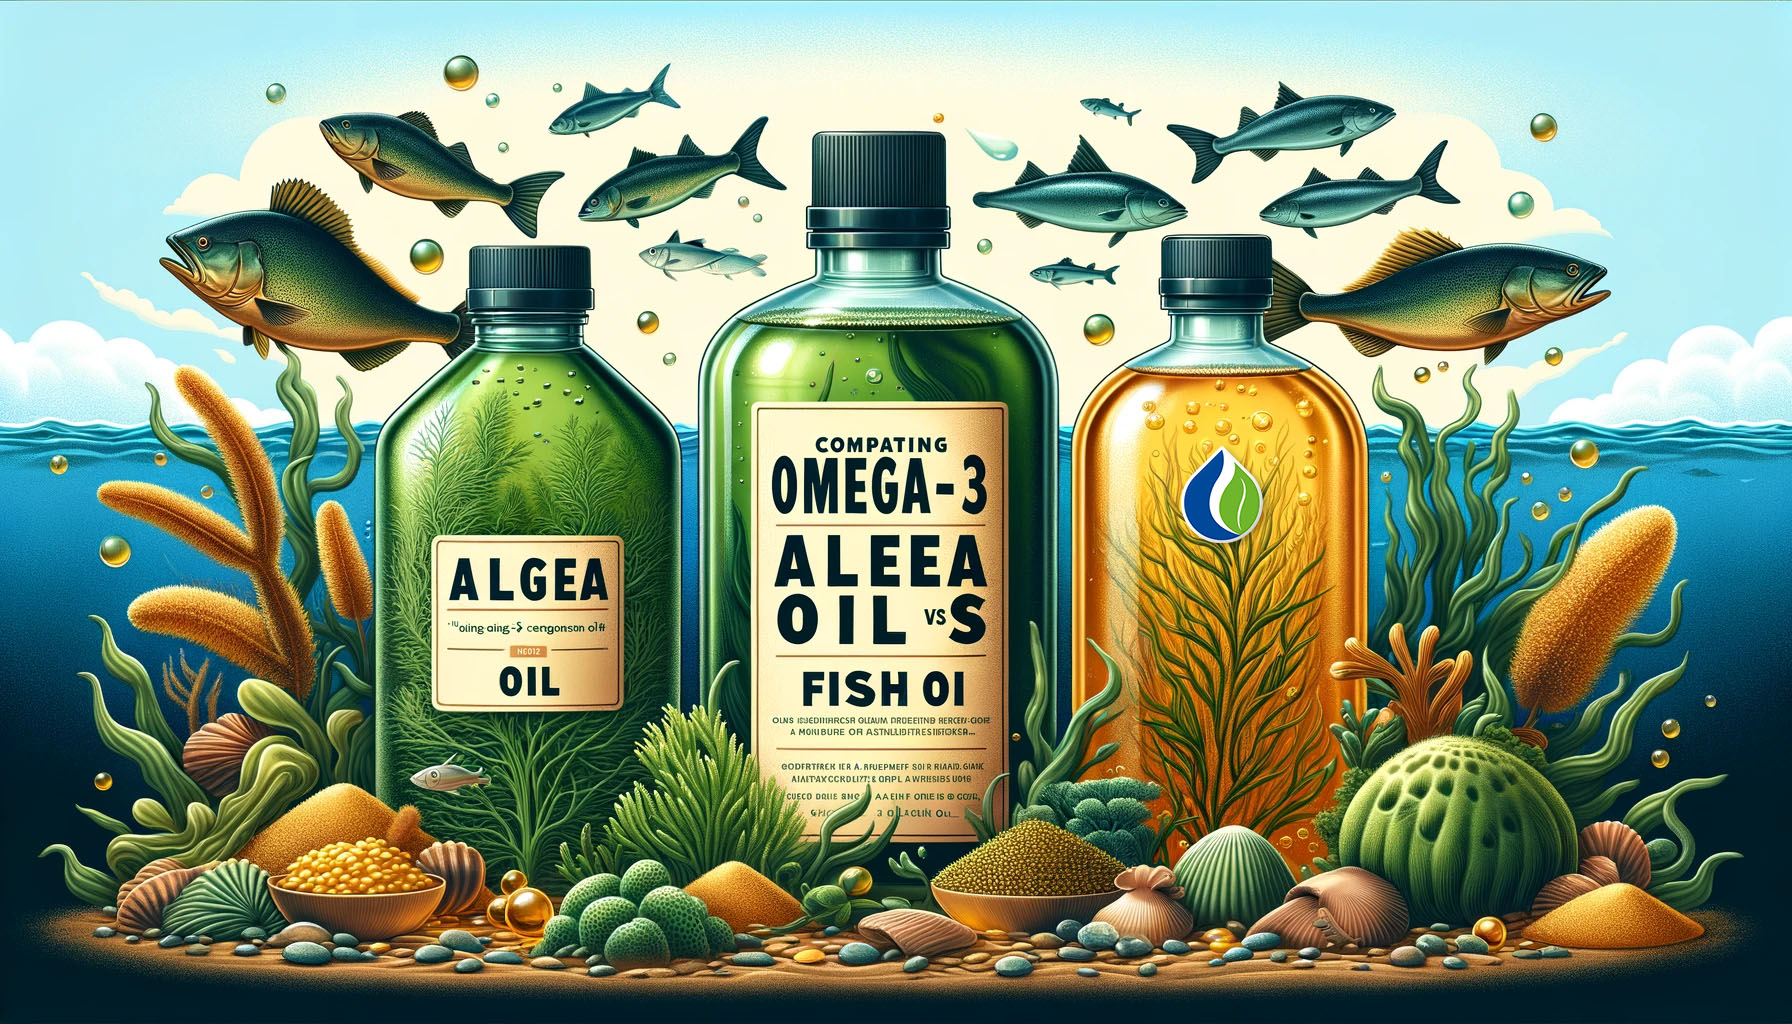 Het vergelijken van Omega-3 bronnen: Algenolie vs Visolie